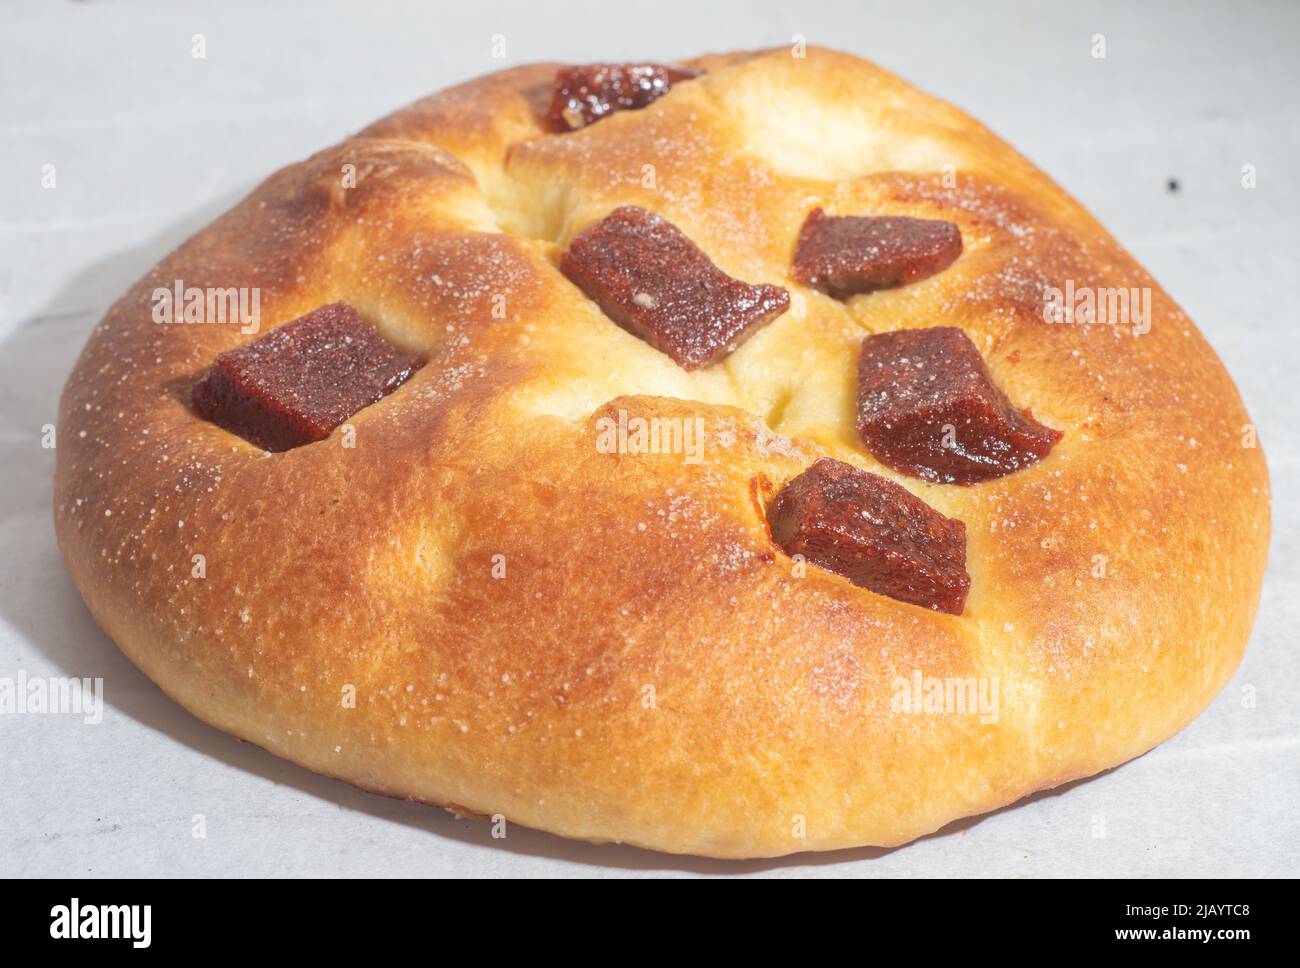 Süßes Brot mit Guava-Marmelade und süßem Mehl auf einem braunen Holztisch. Es ist eine in Brasilien und Portugal verbreitete Art von Brot, die aus süßem Teig hergestellt wird. Stockfoto